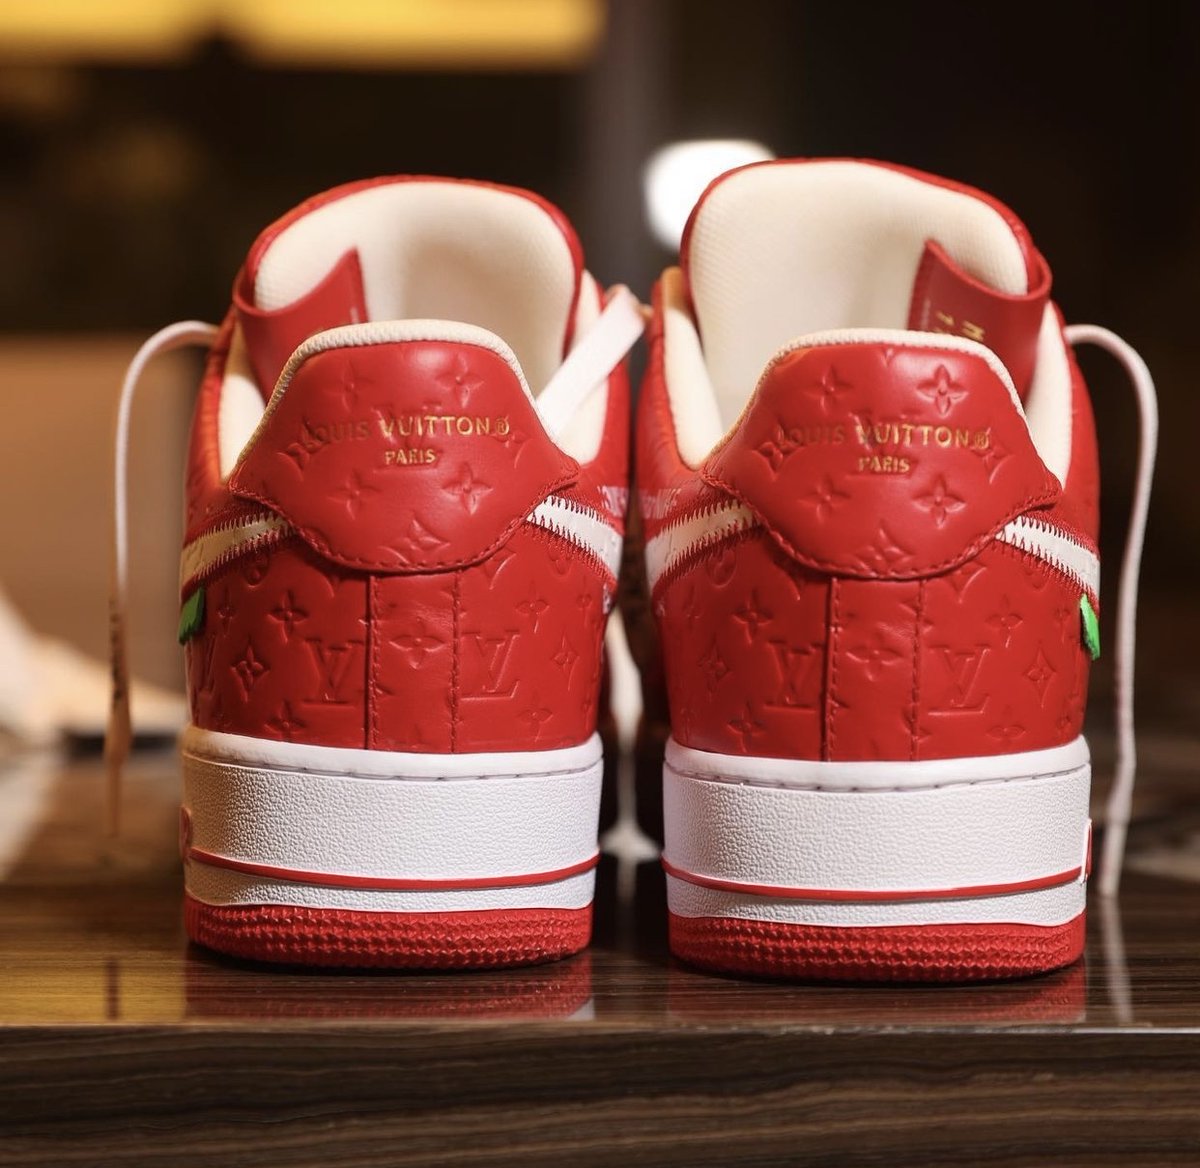 SneakerFiles.com on X: DJ Khaled Previews Louis Vuitton x Nike